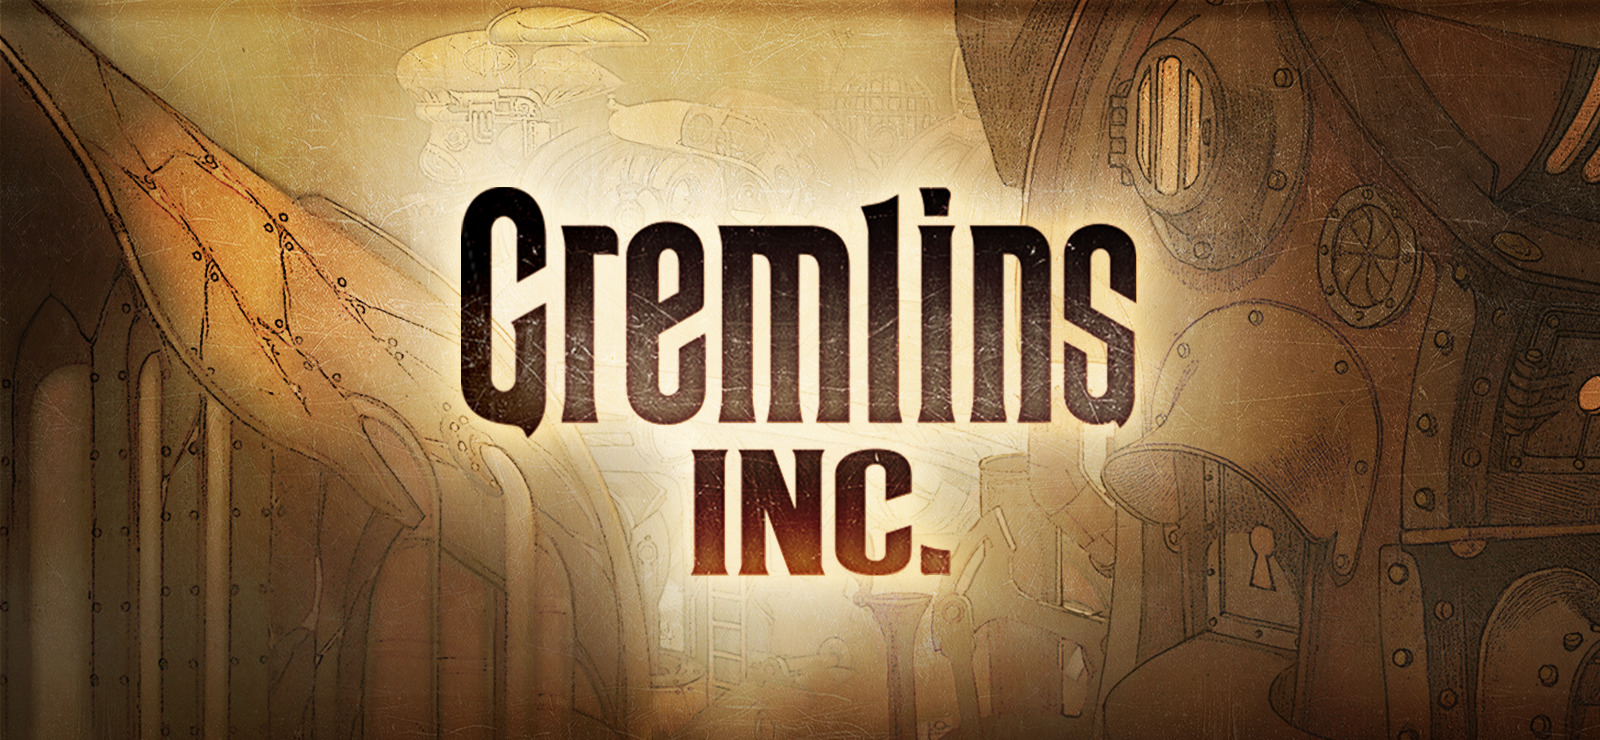 Ð�Ð°Ñ�Ñ�Ð¸Ð½ÐºÐ¸ Ð¿Ð¾ Ð·Ð°Ð¿Ñ�Ð¾Ñ�Ñ� Gremlins, Inc. logo png